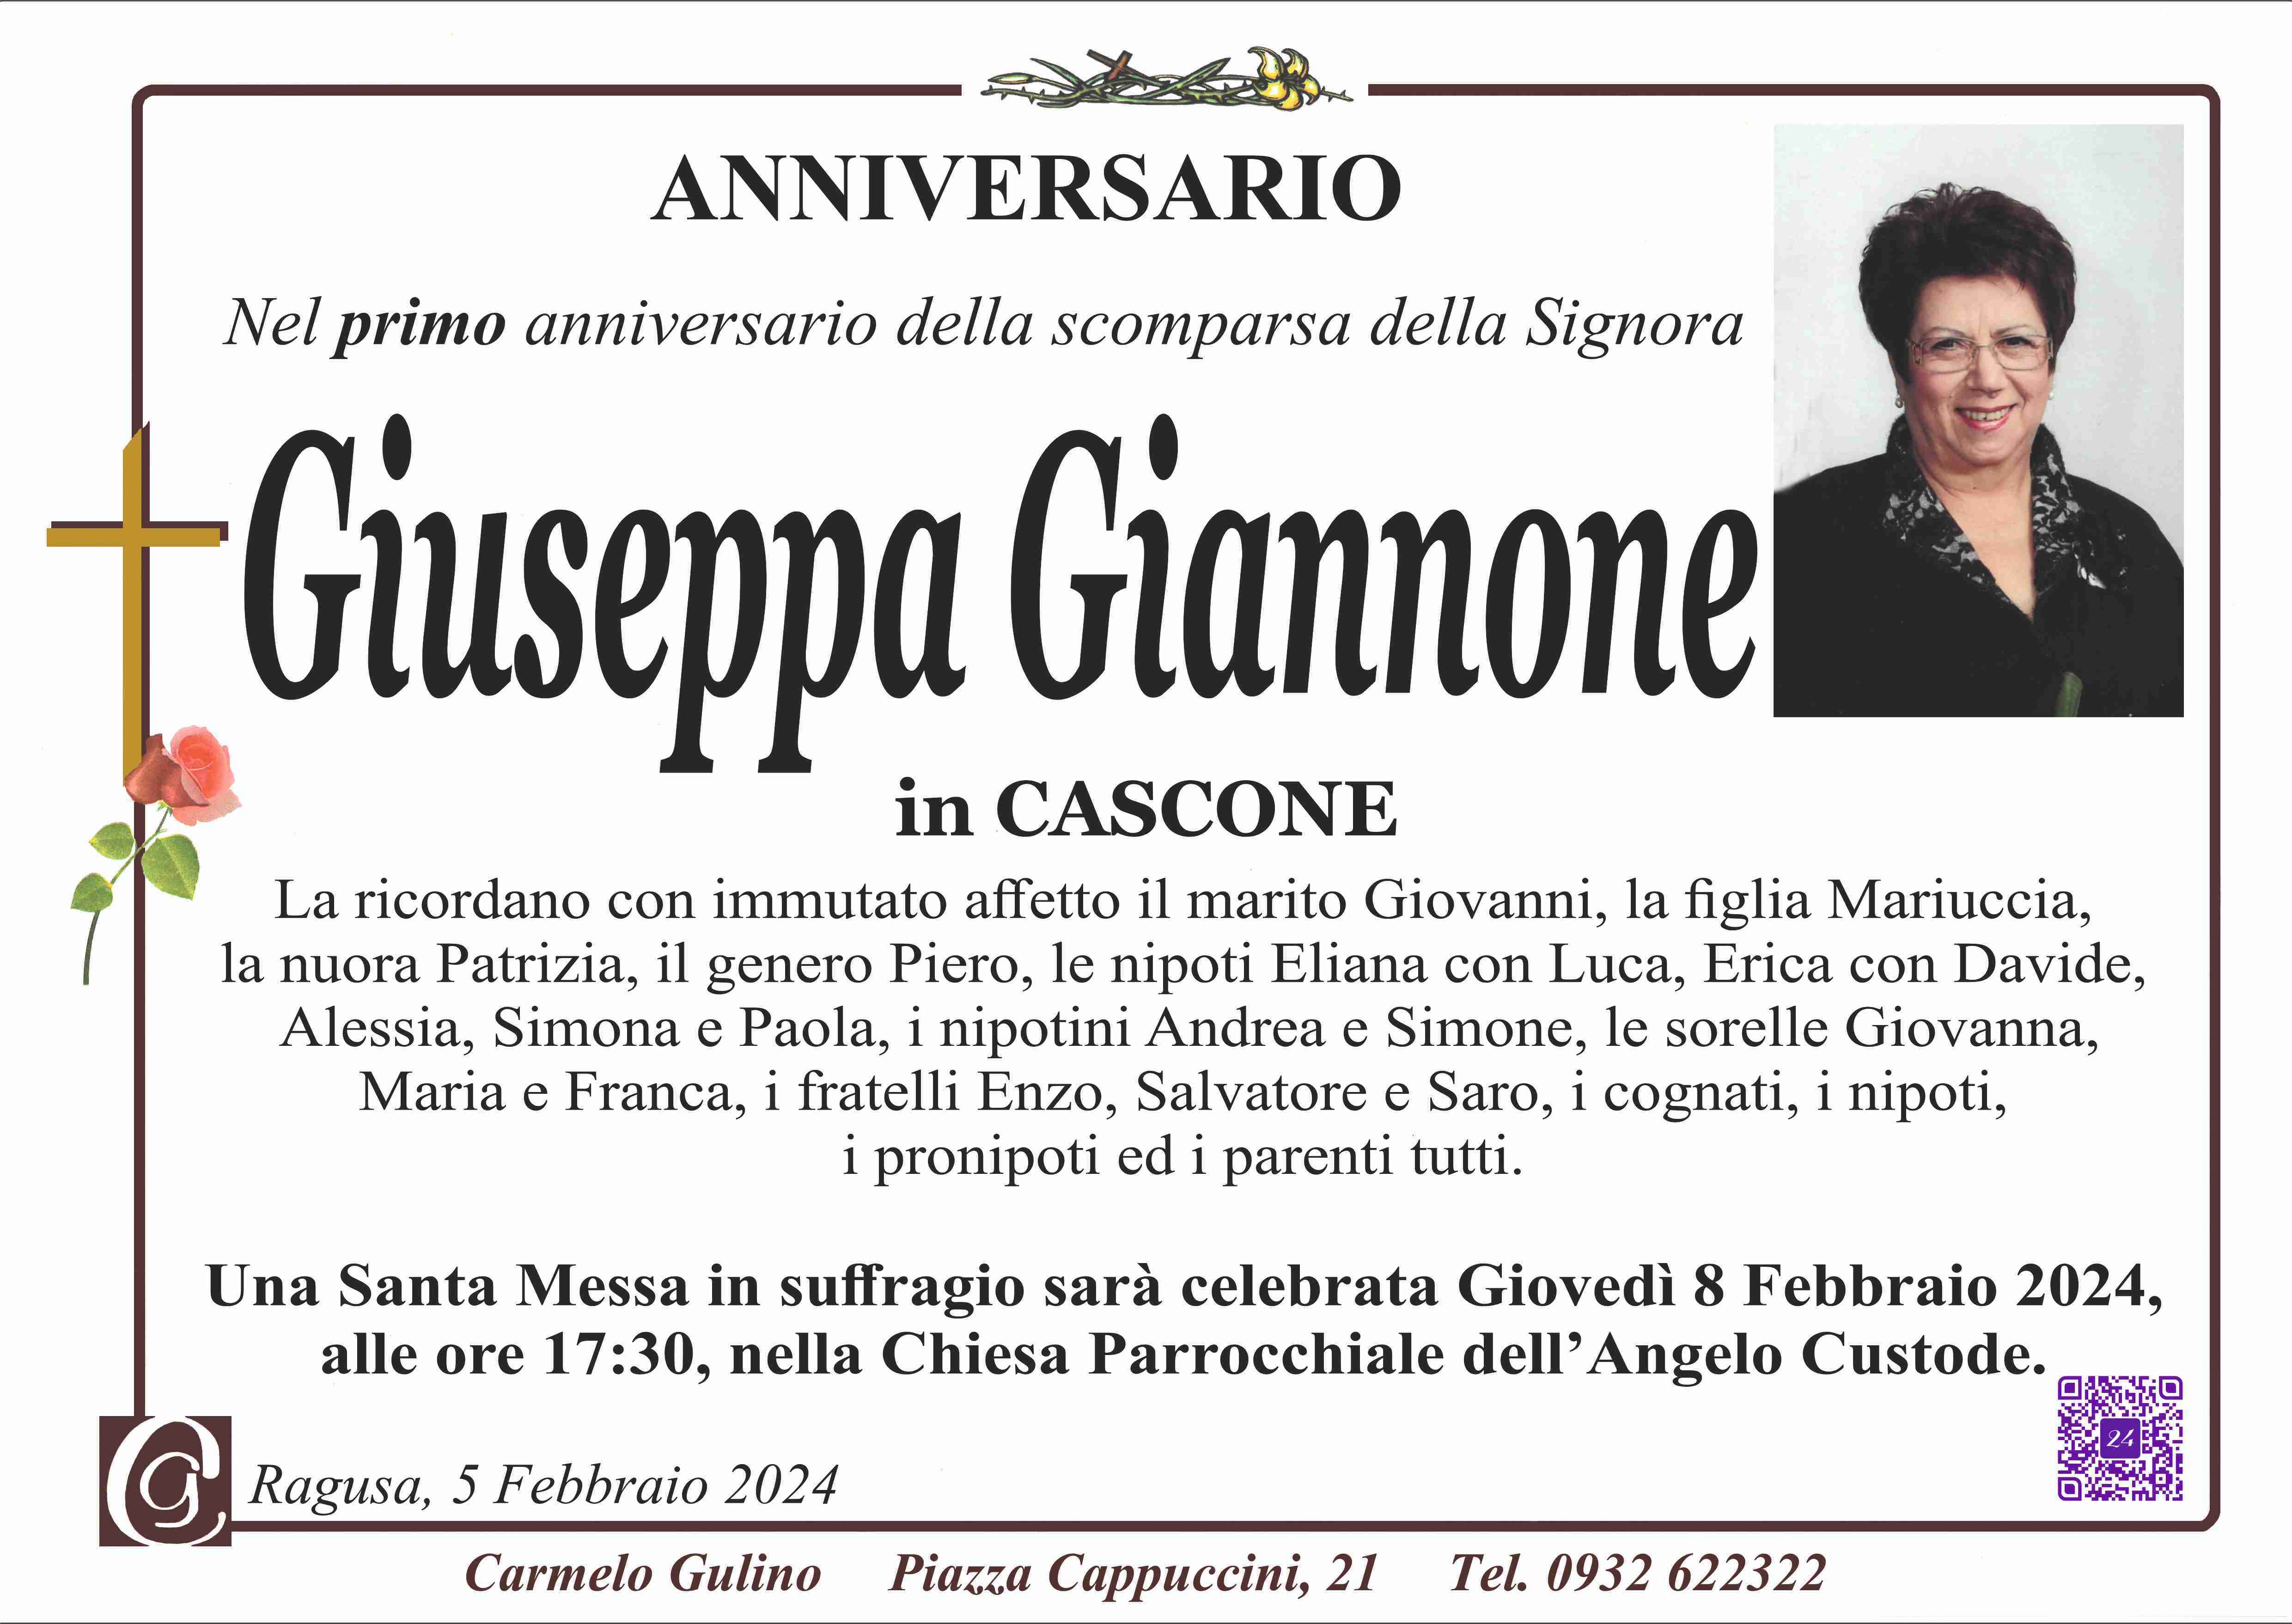 Giuseppa Giannone